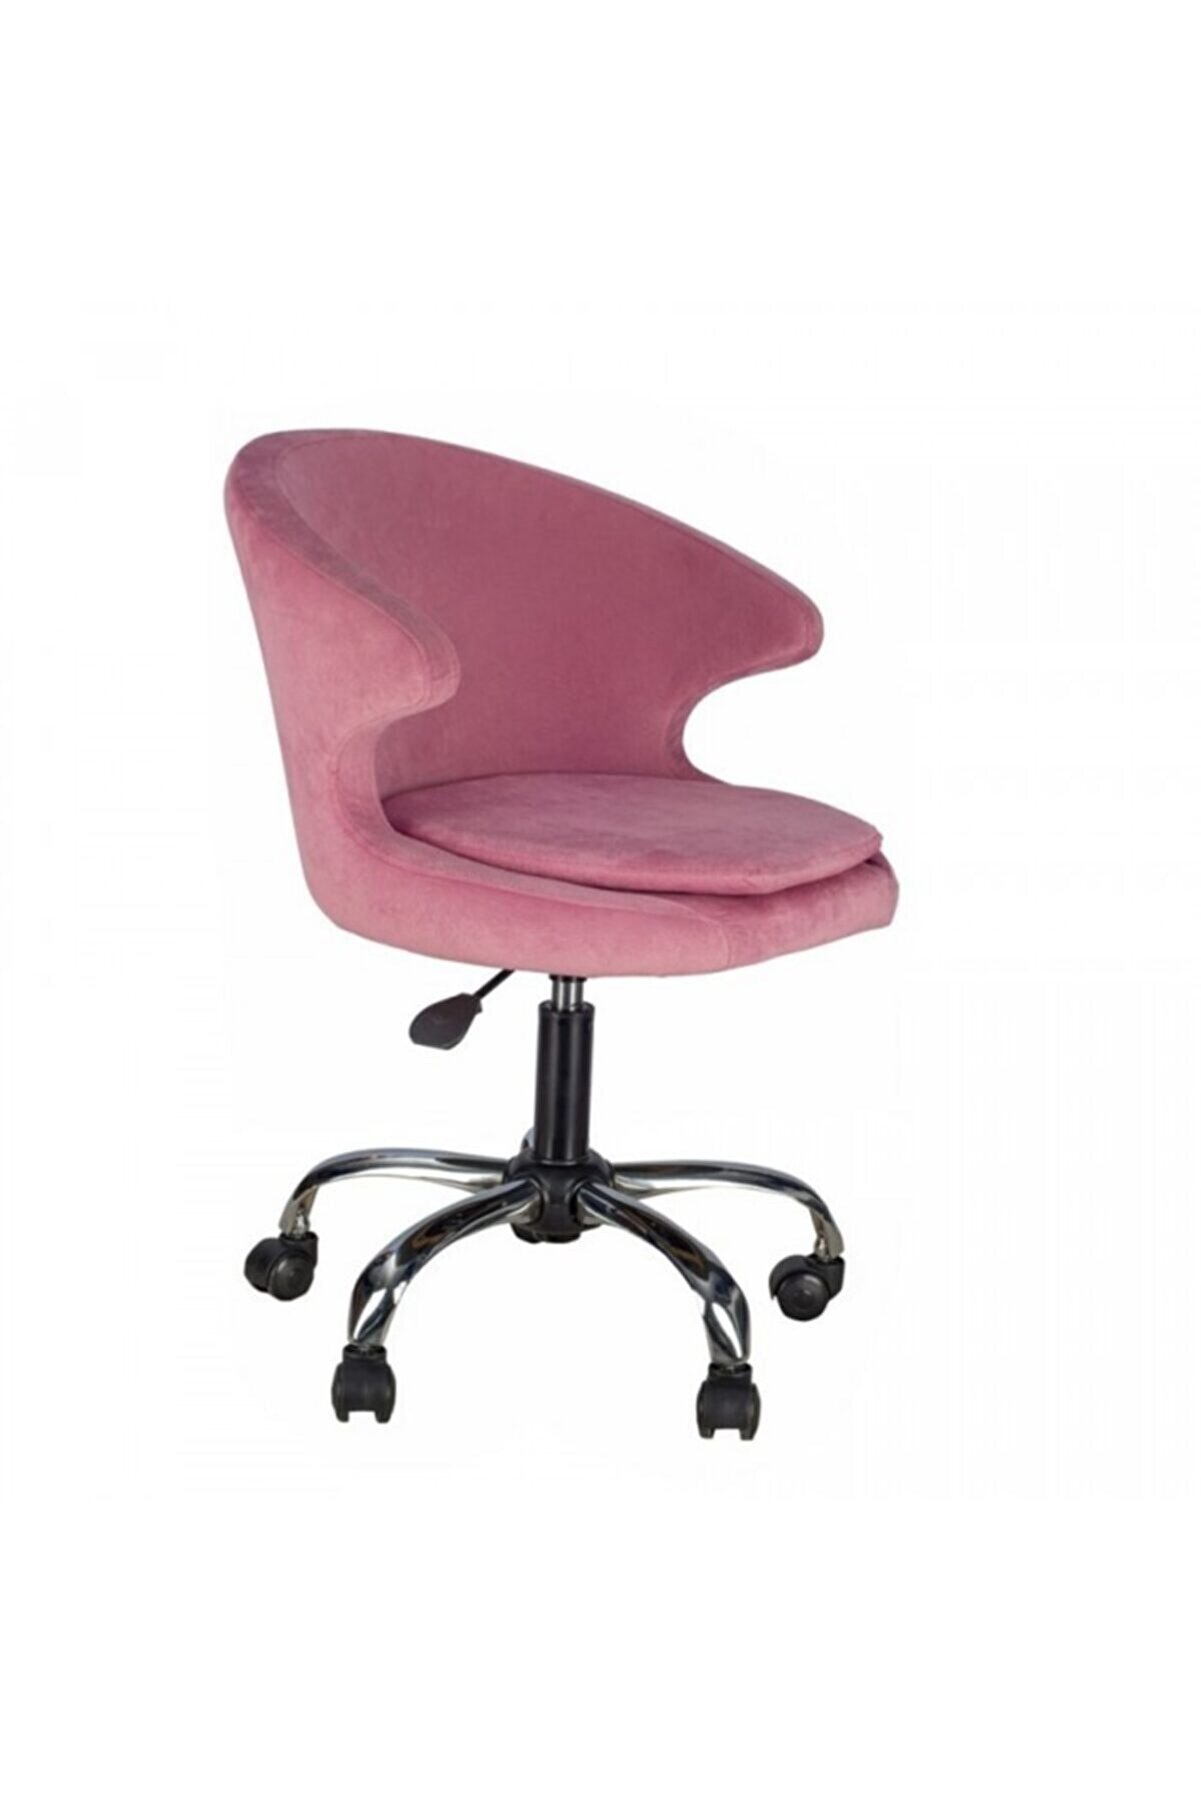 Massa Design Koket Çalışma Sandalyesi - Ofis Sandalyesi